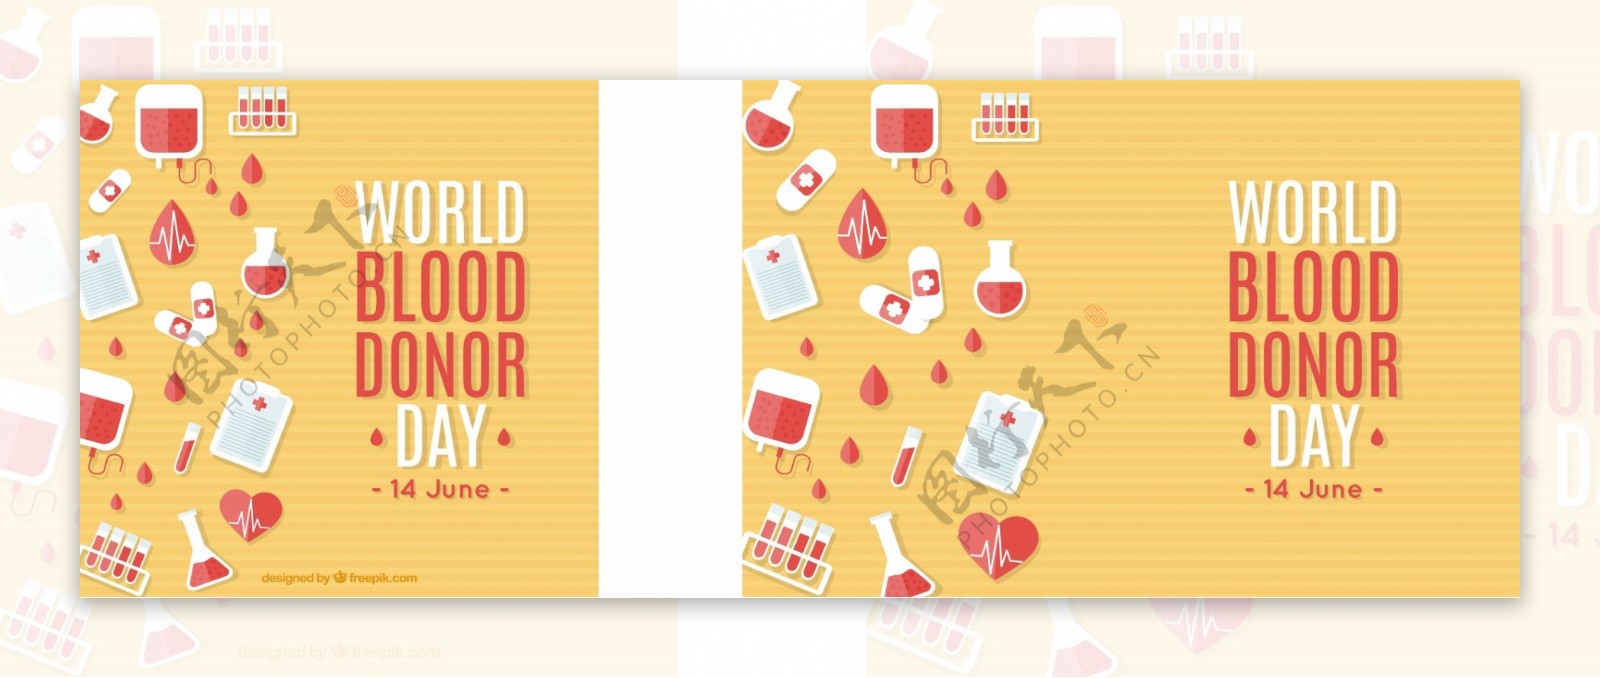 世界献血日背景与医疗因素